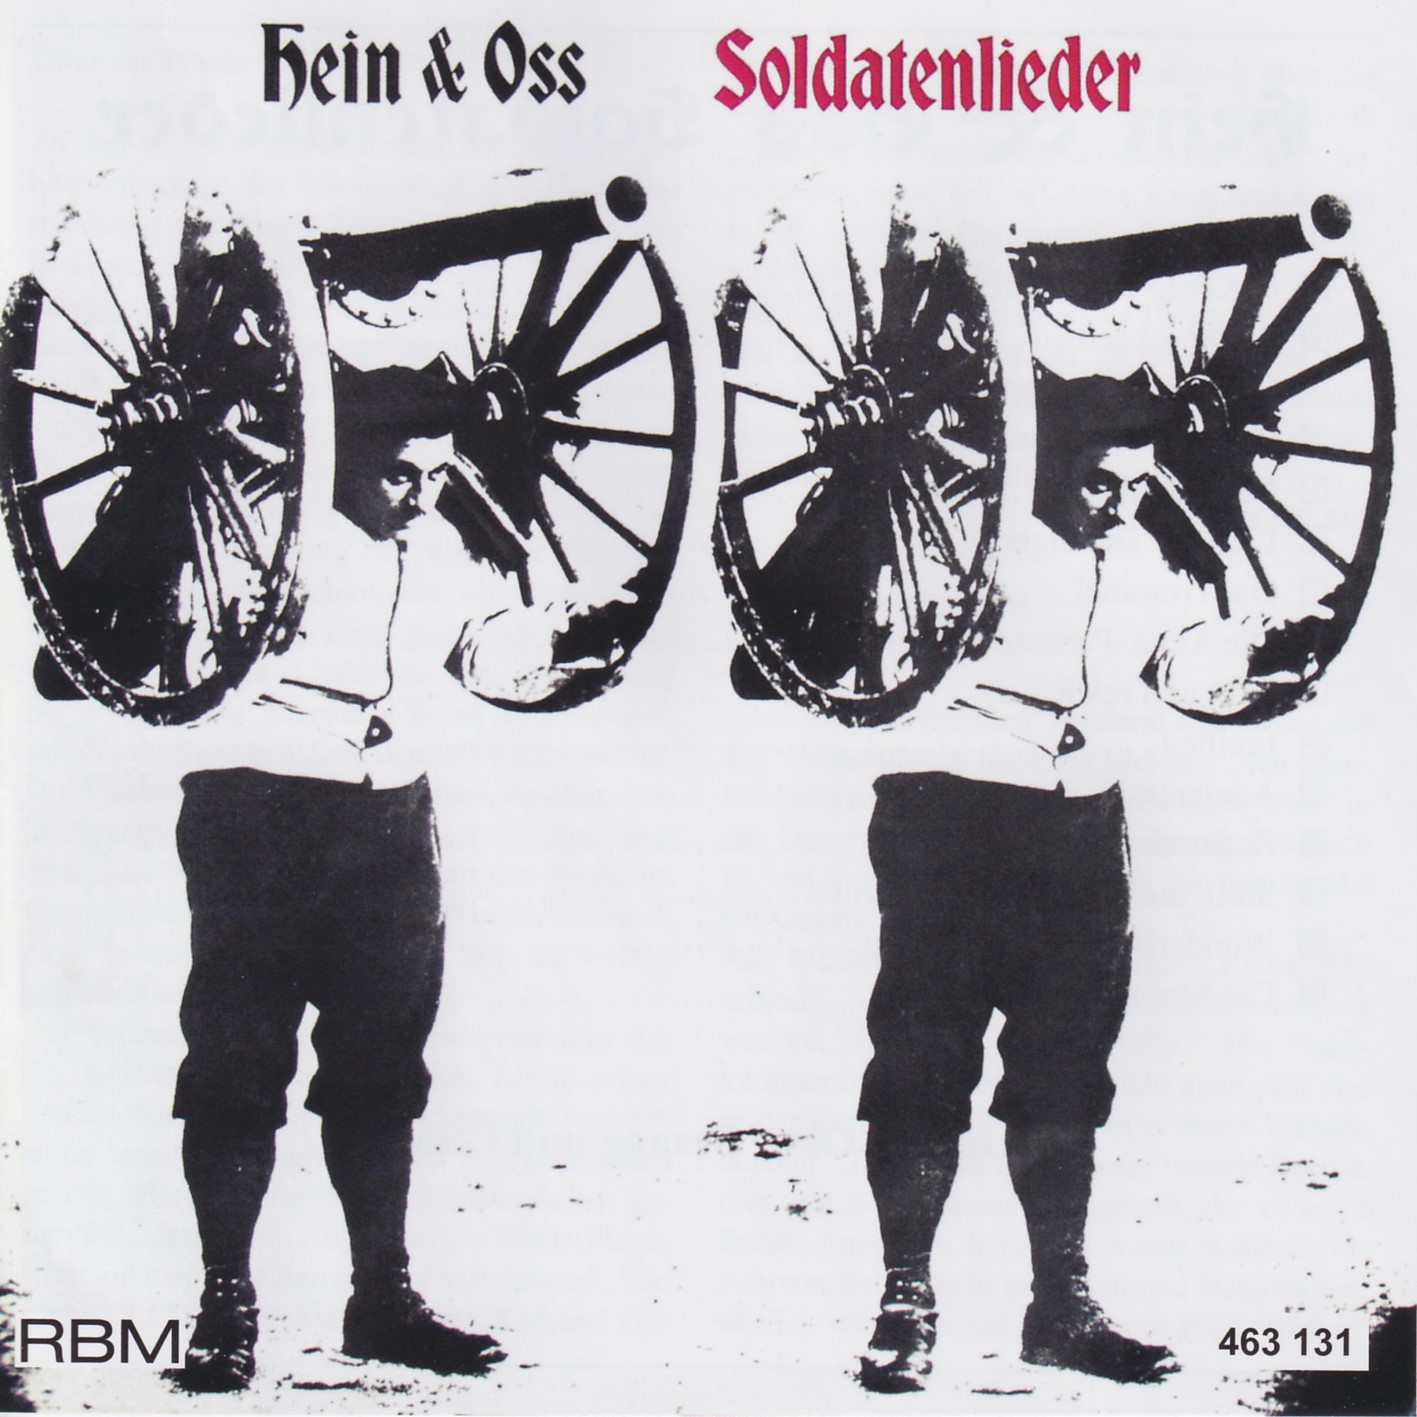 Hein & Oss - Soldatenlieder